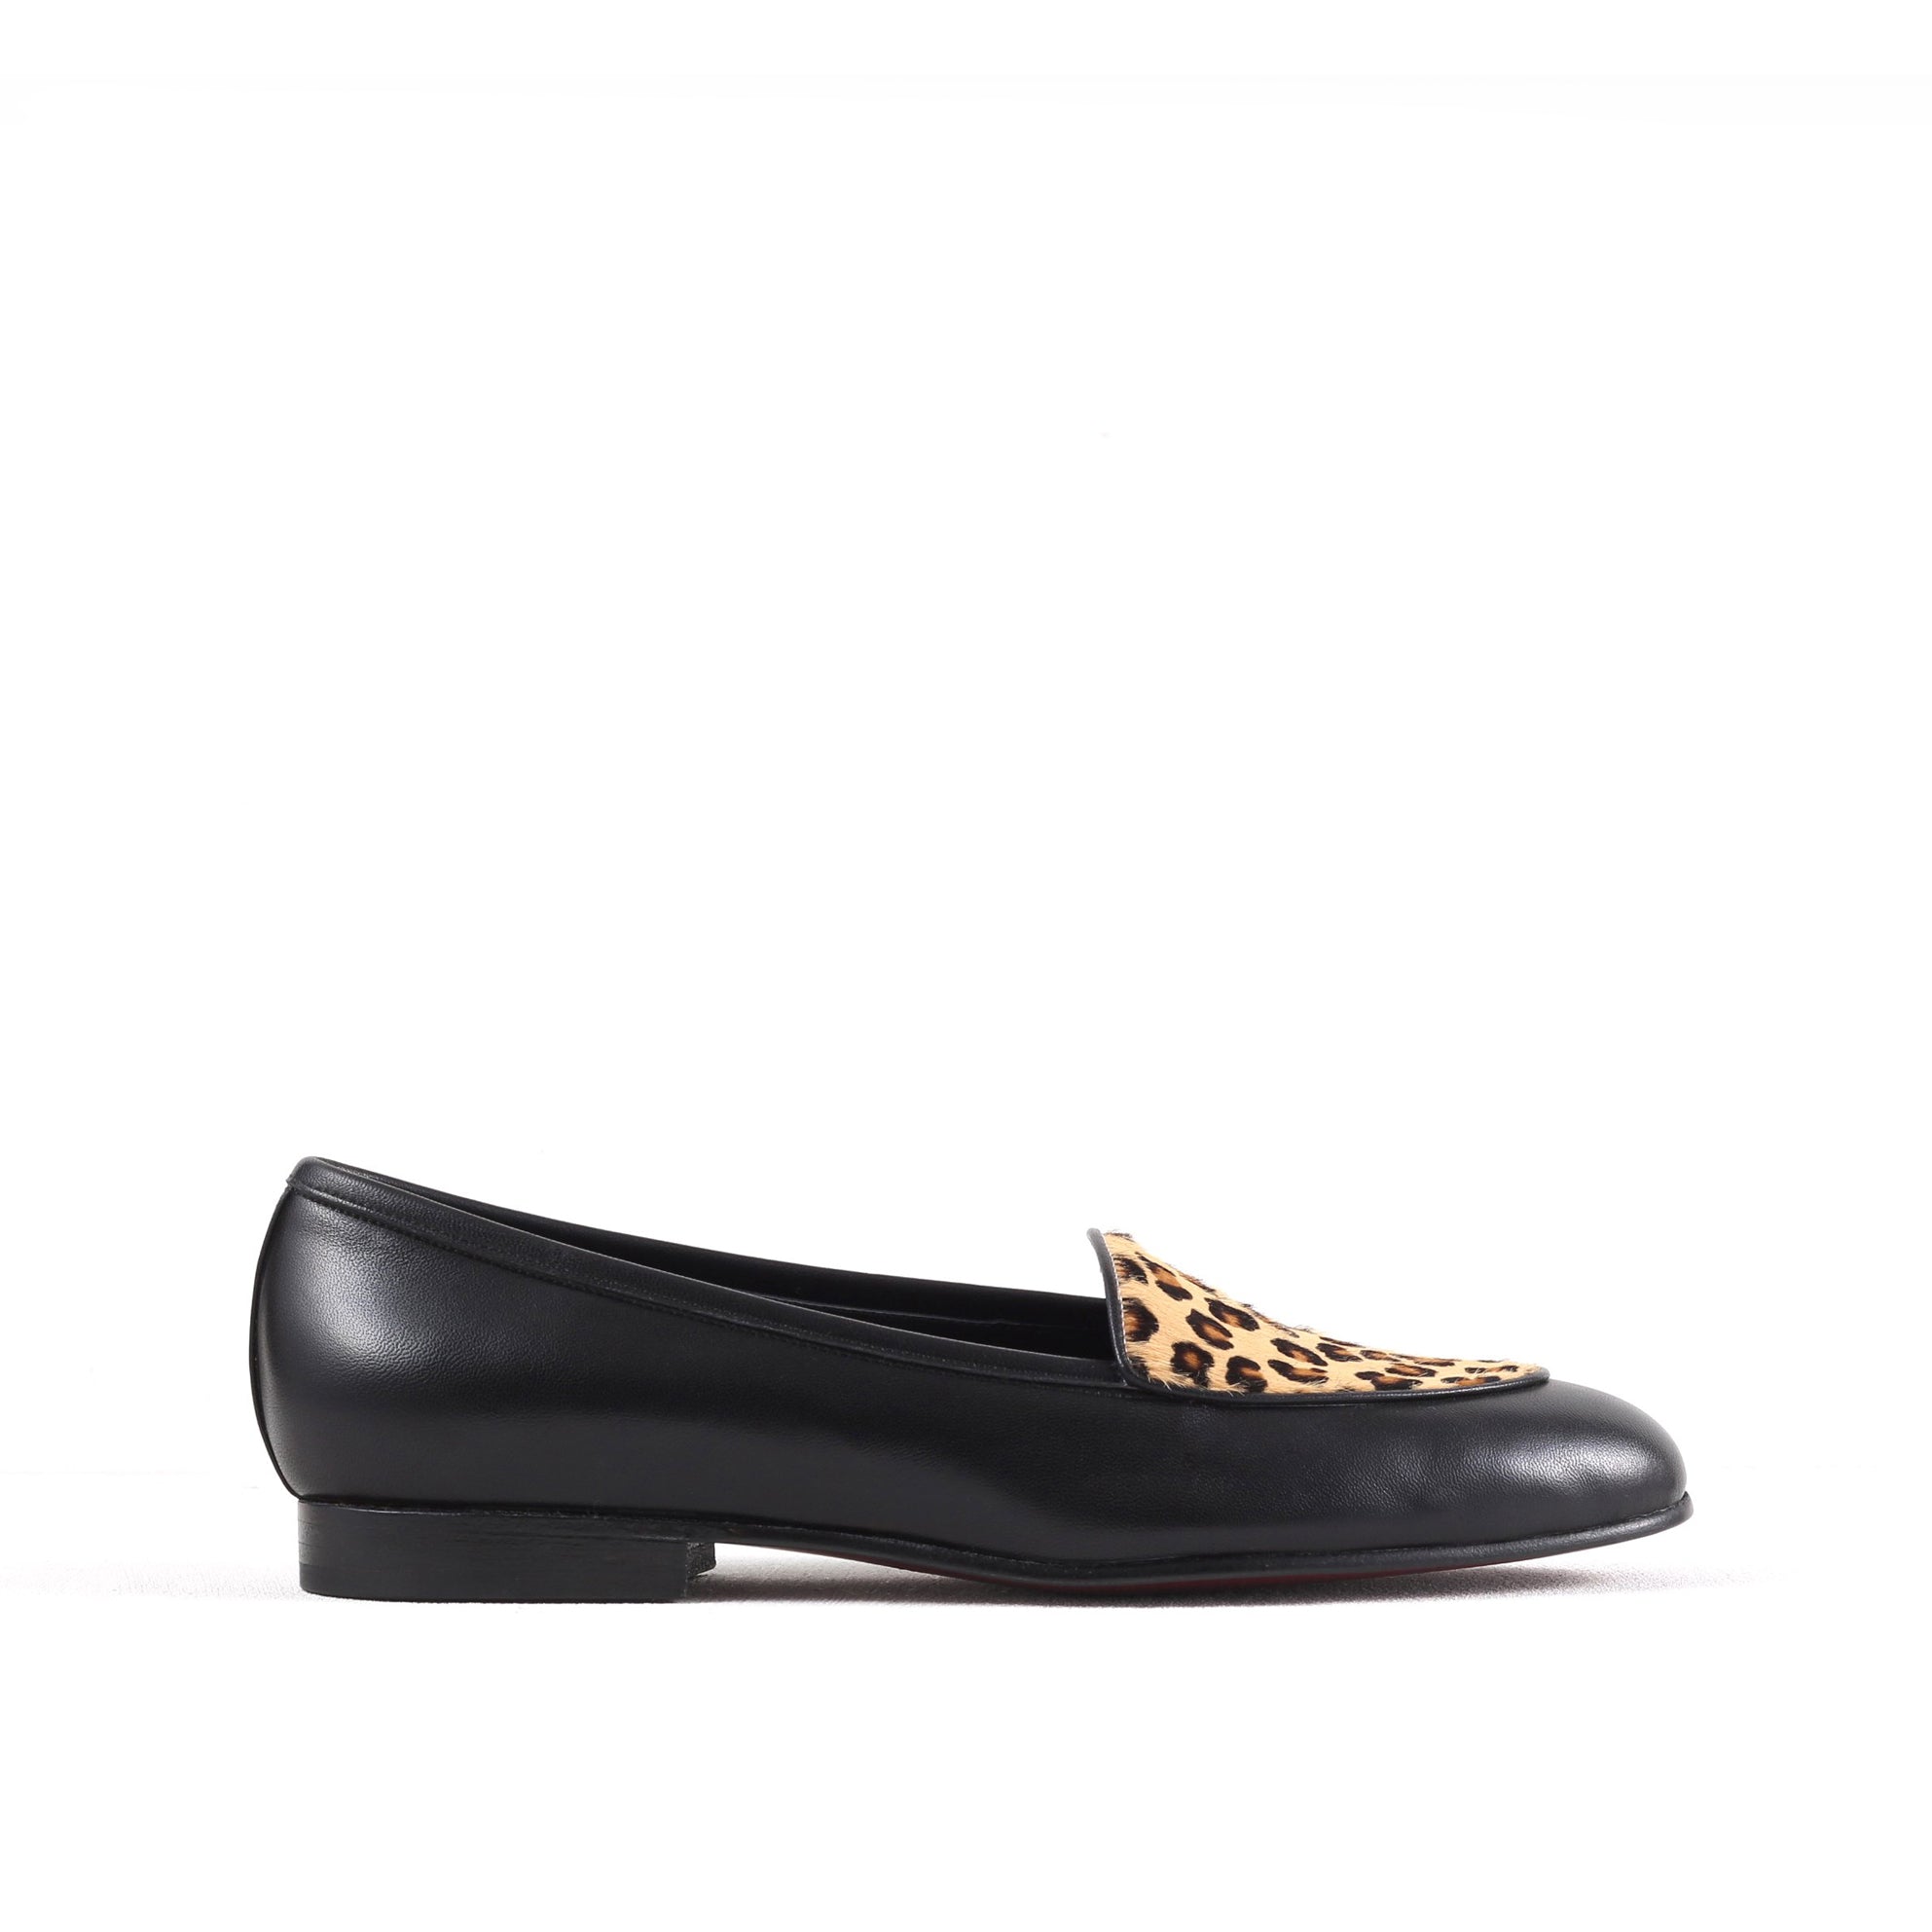 [women's] loafers - leopard-print